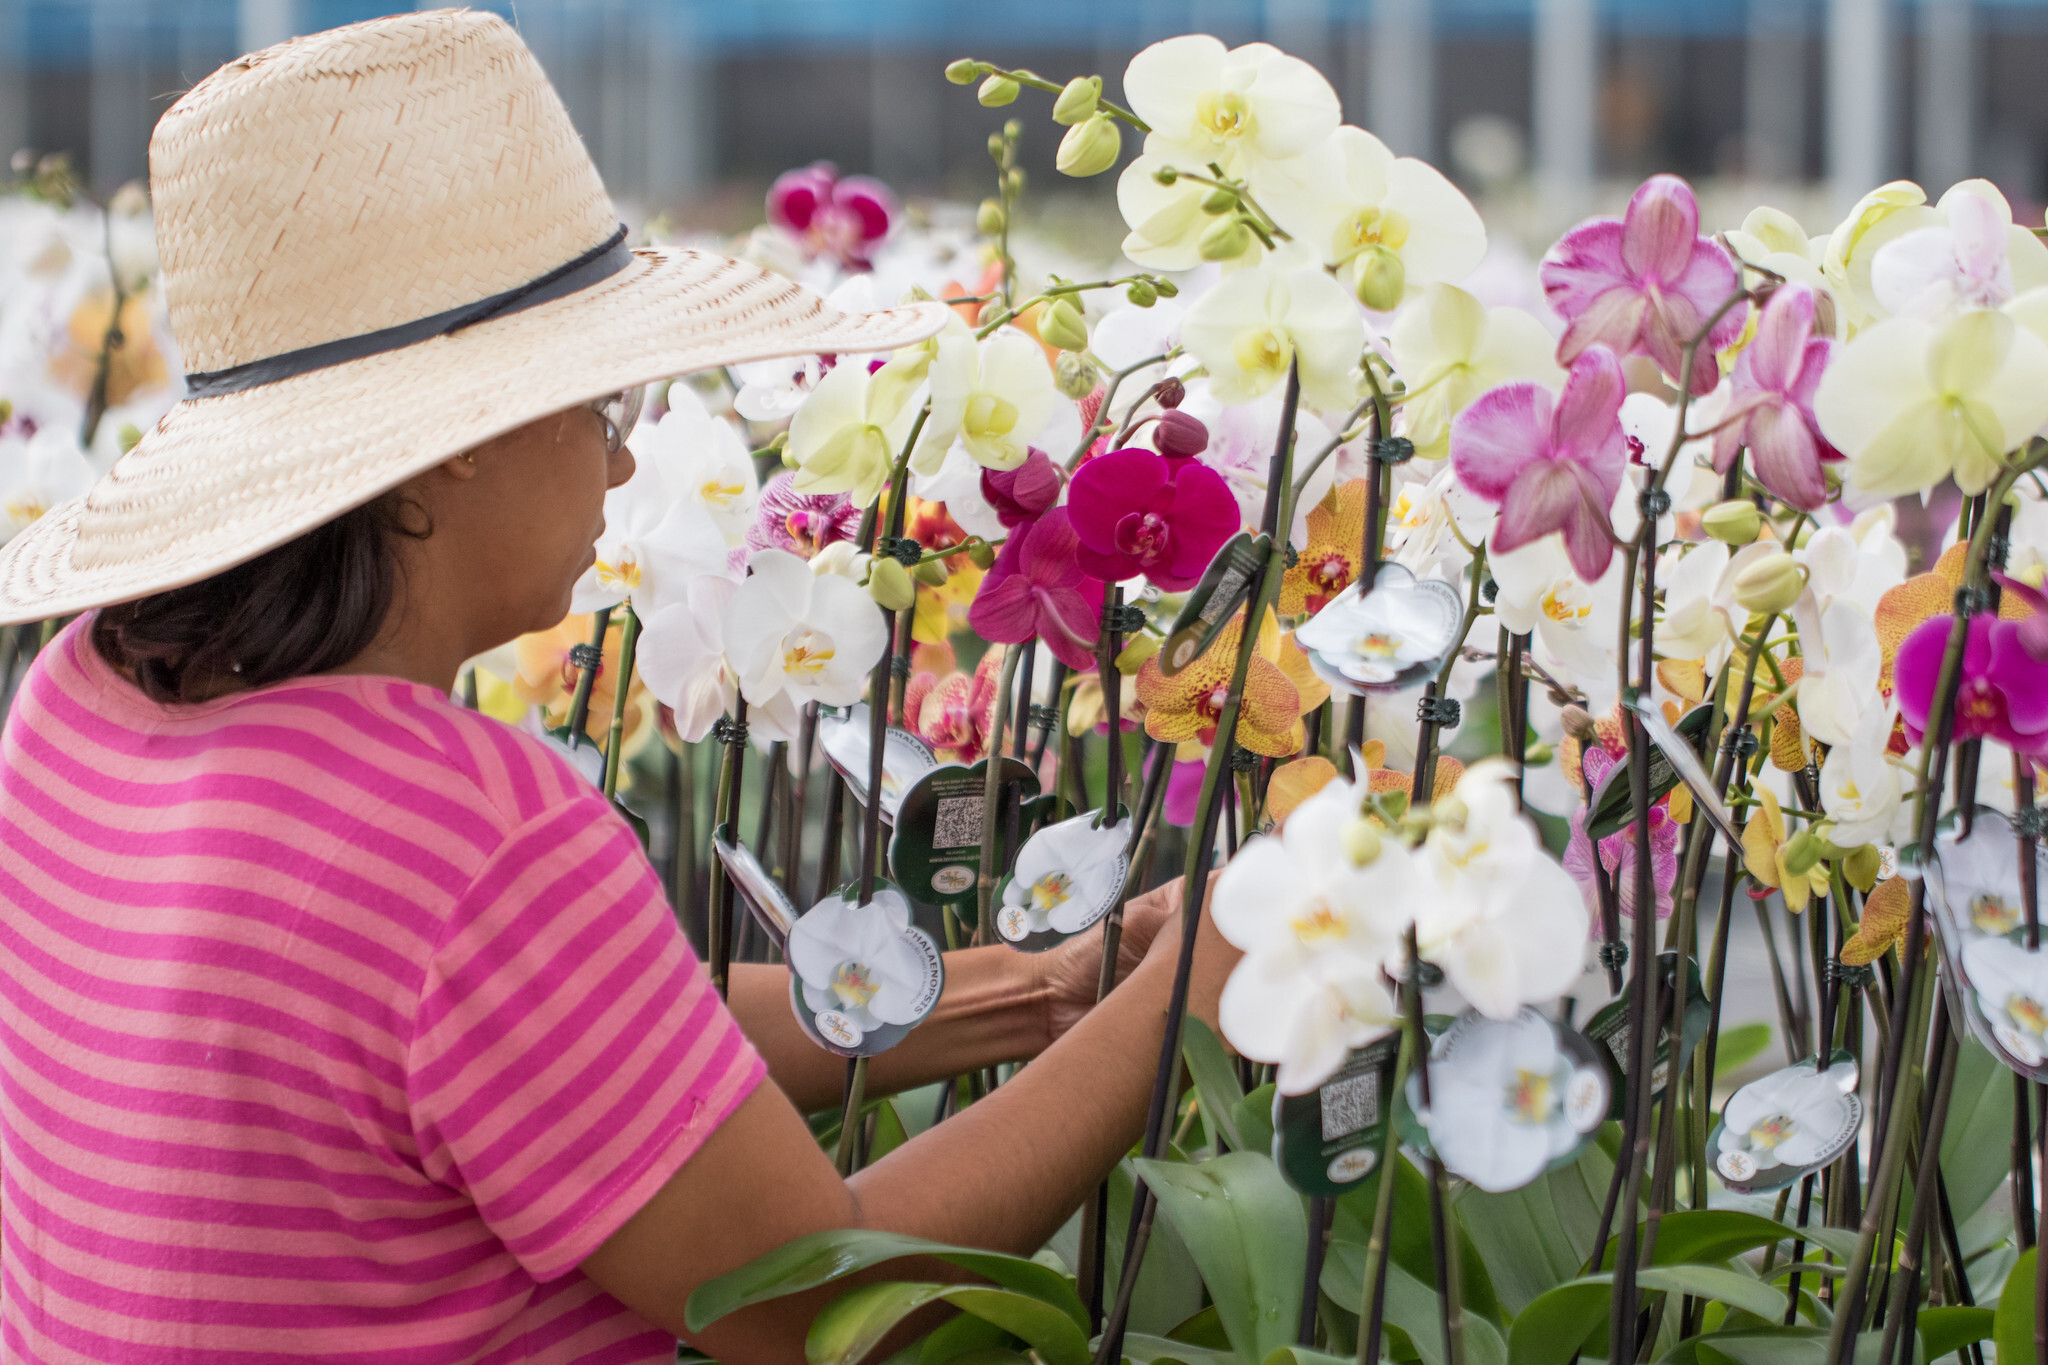 De 2020 para 2021, o mercado de flores no país cresceu 15% de acordo com a Ibraflor (Instituto Brasileiro de Floricultura). - Foto: Tony Oliveira/CNA